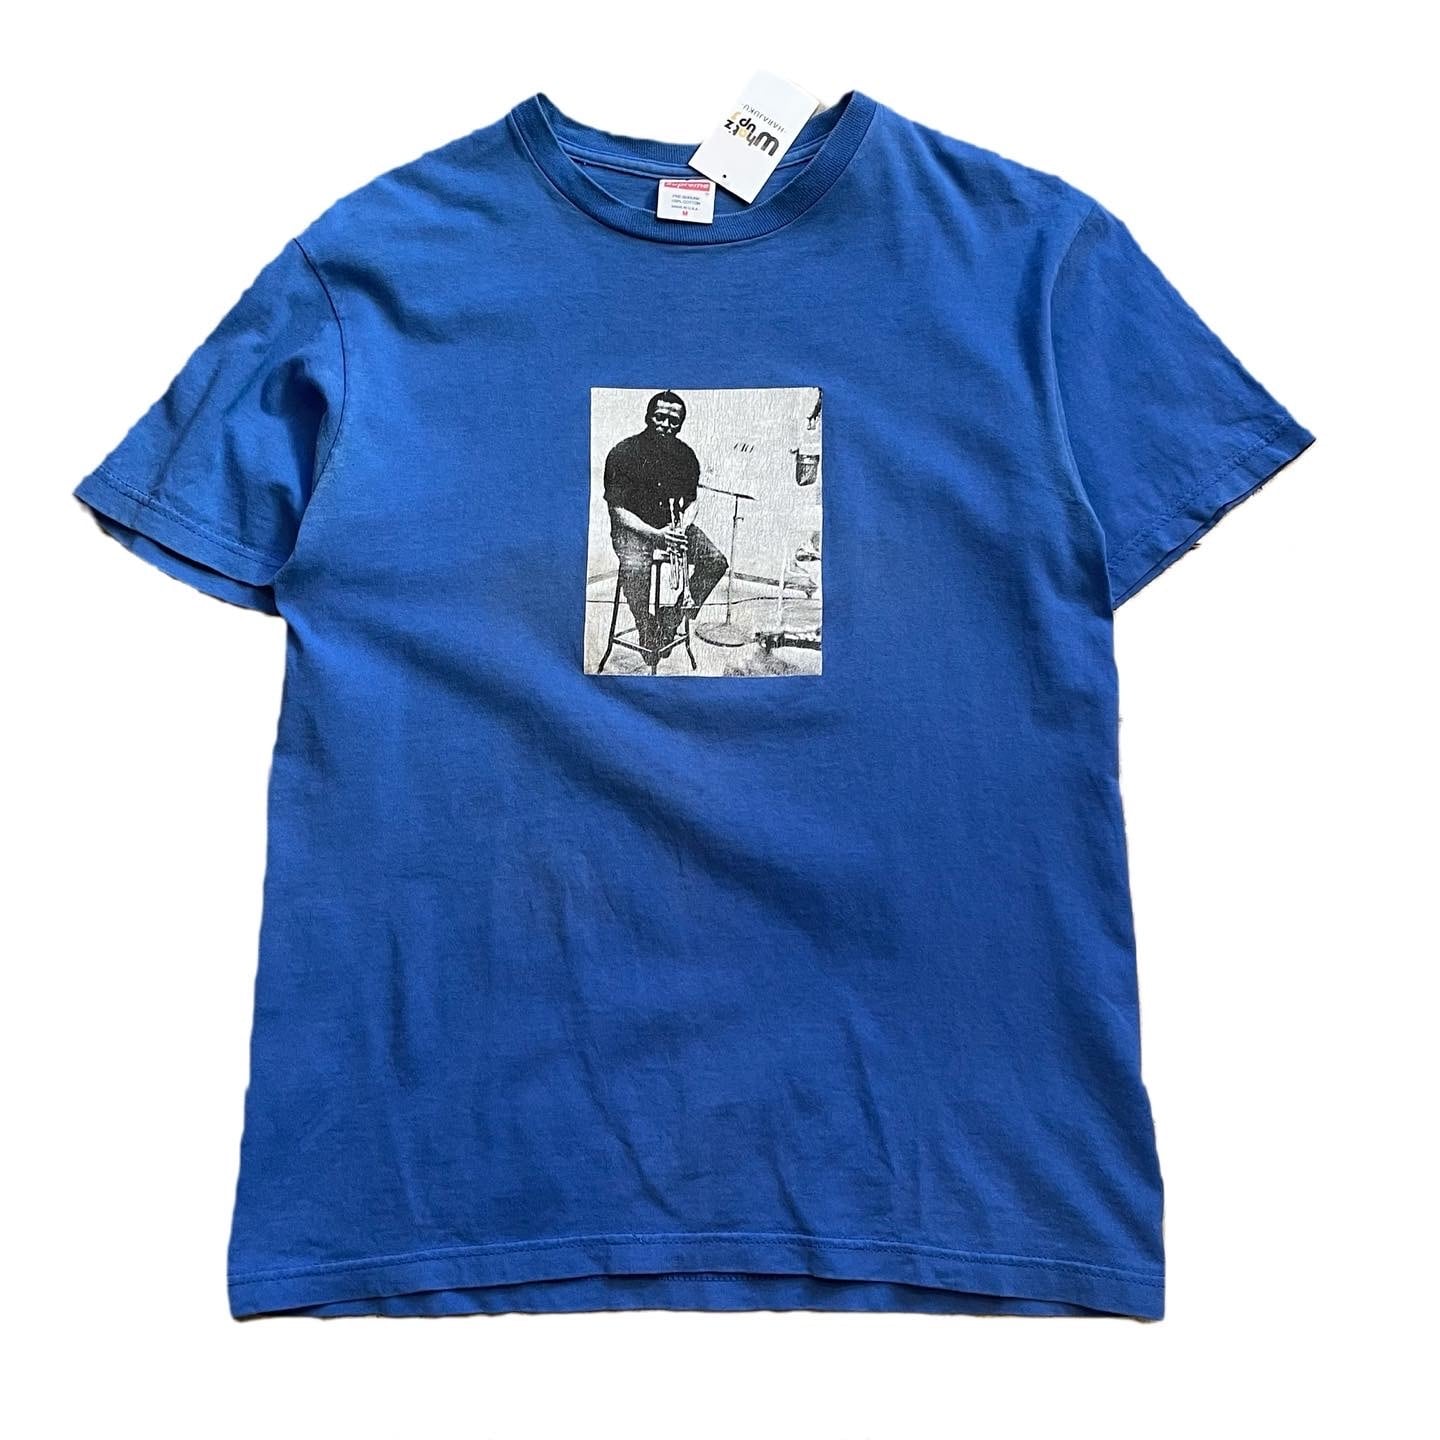 オハイオプレイヤーズ【新品】Miles Davis「オンザコーナー」Tシャツ